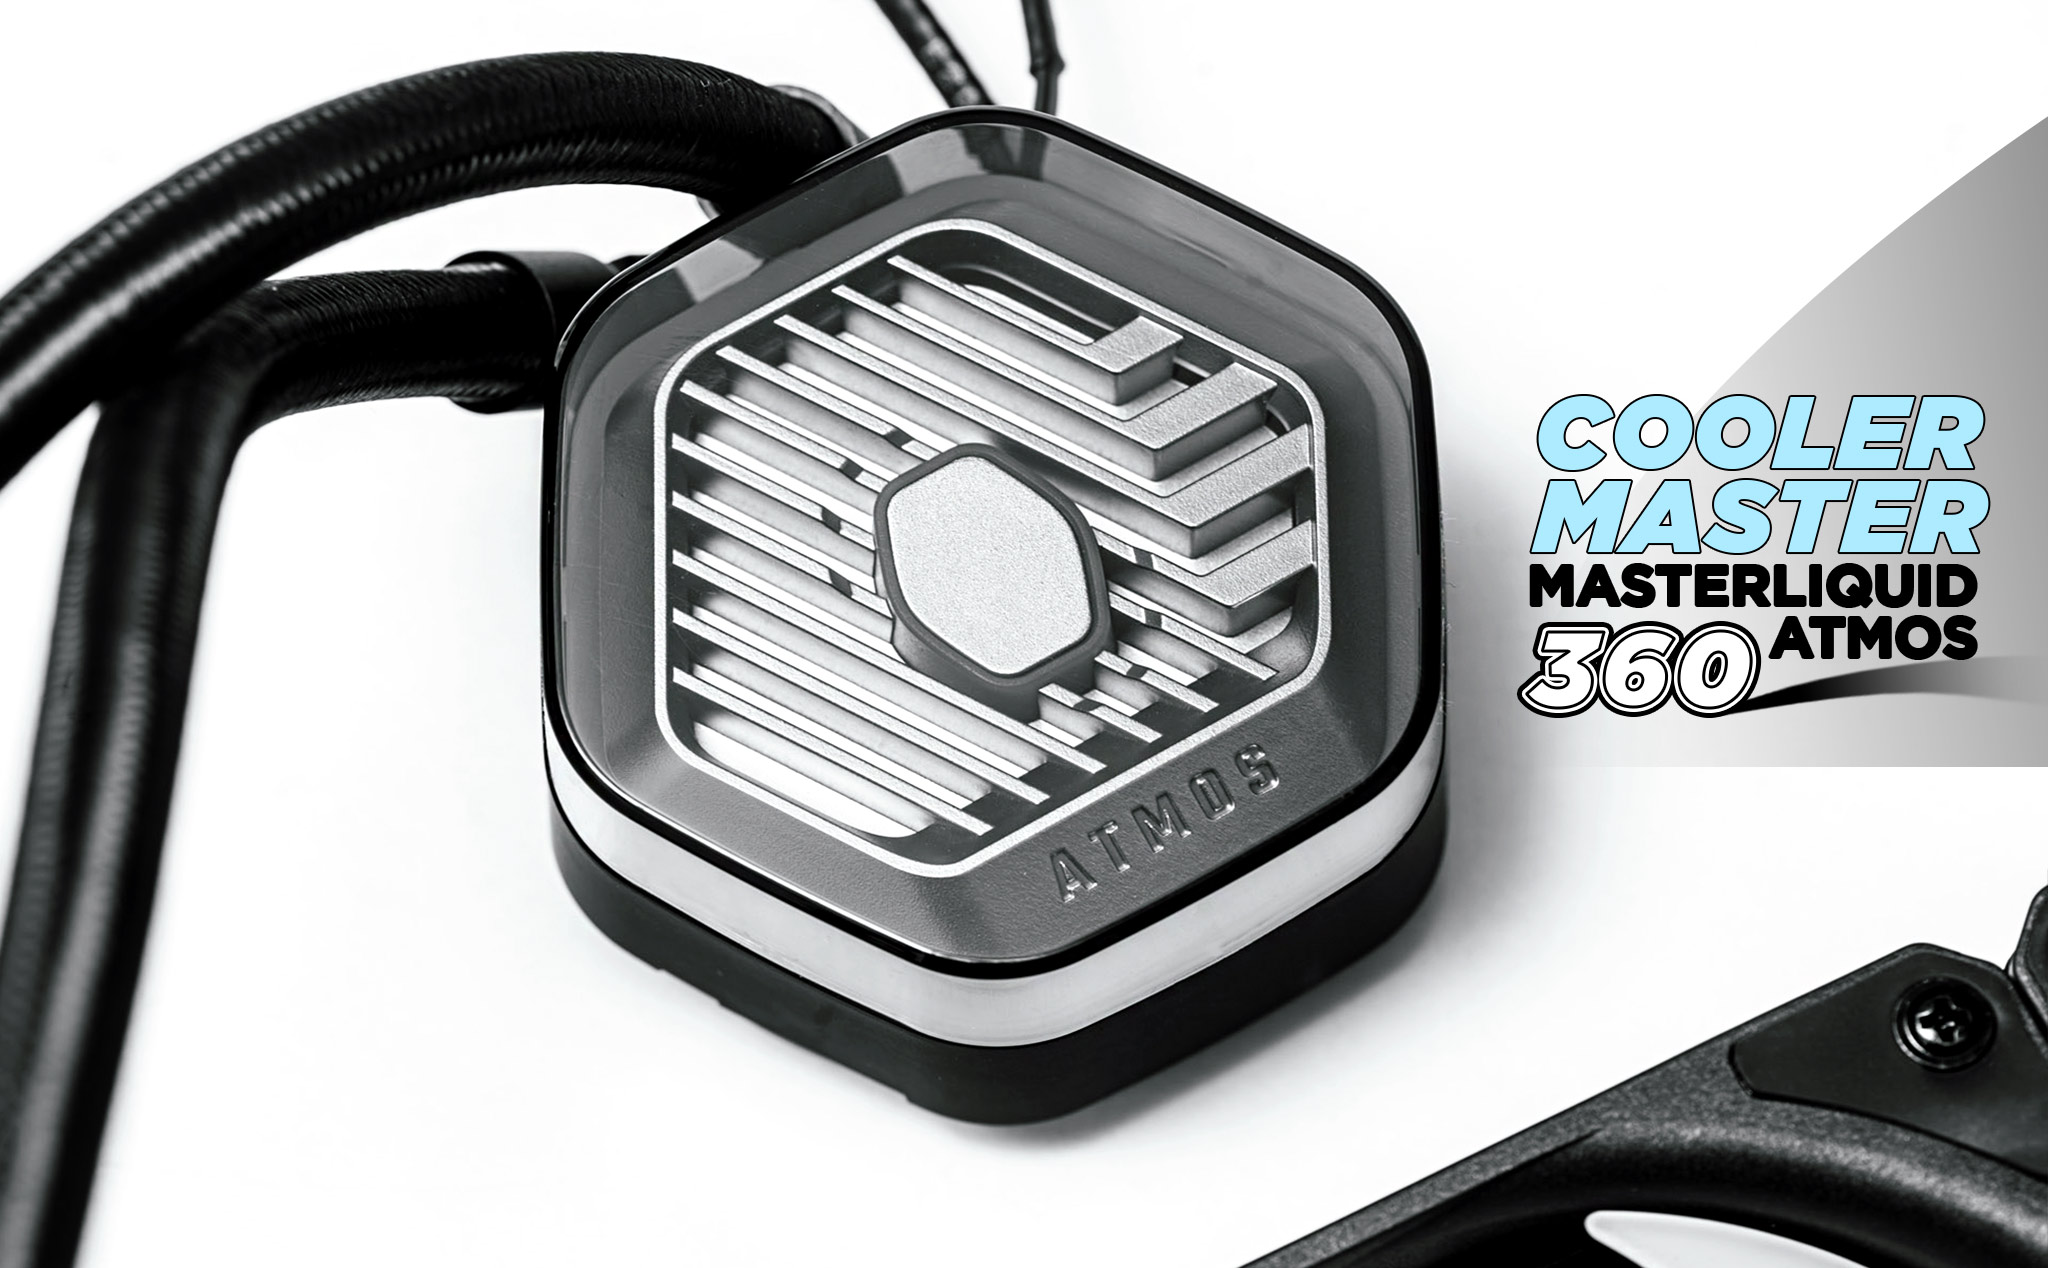 Trên tay Cooler Master MasterLiquid 360 Atmos - Hiệu năng ổn, tùy biến ngoại hình